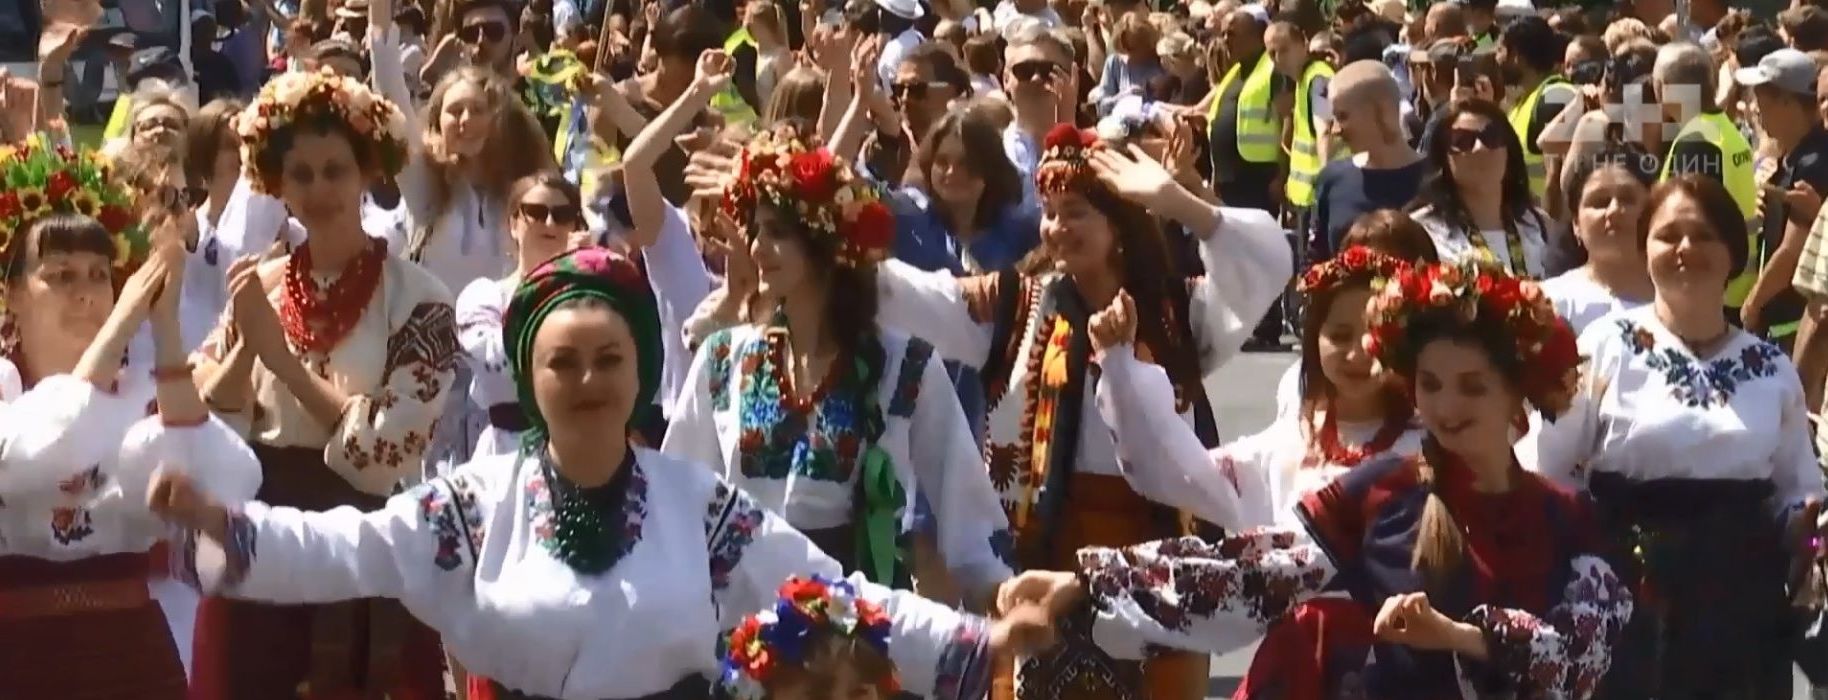 Украинцы блестяще проявили себя на "Карнавале культур" в Берлине